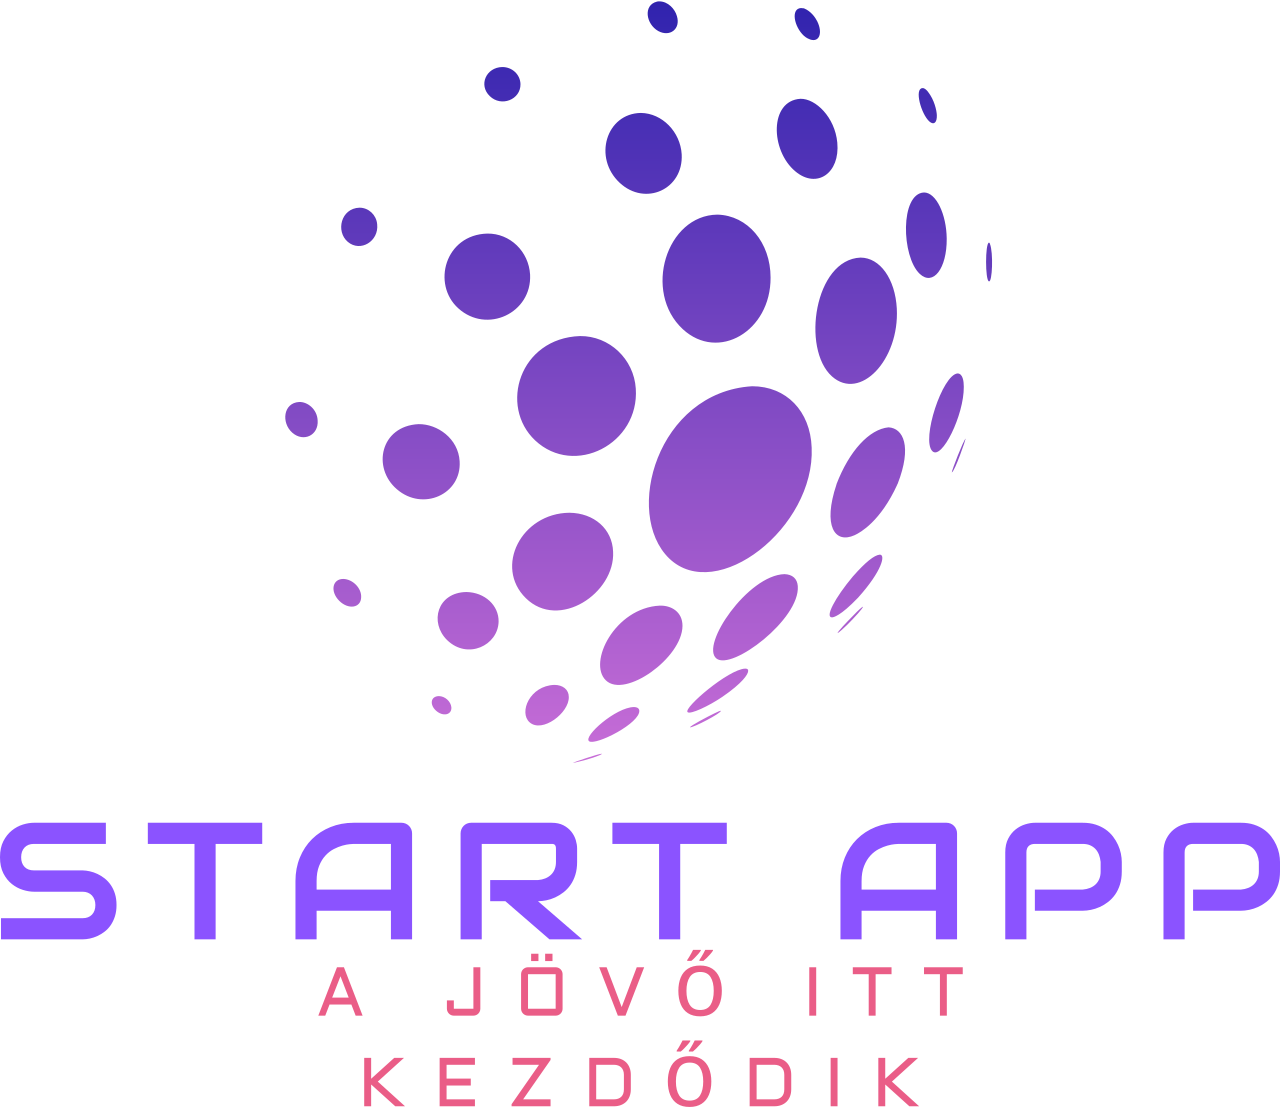 START APP's logo